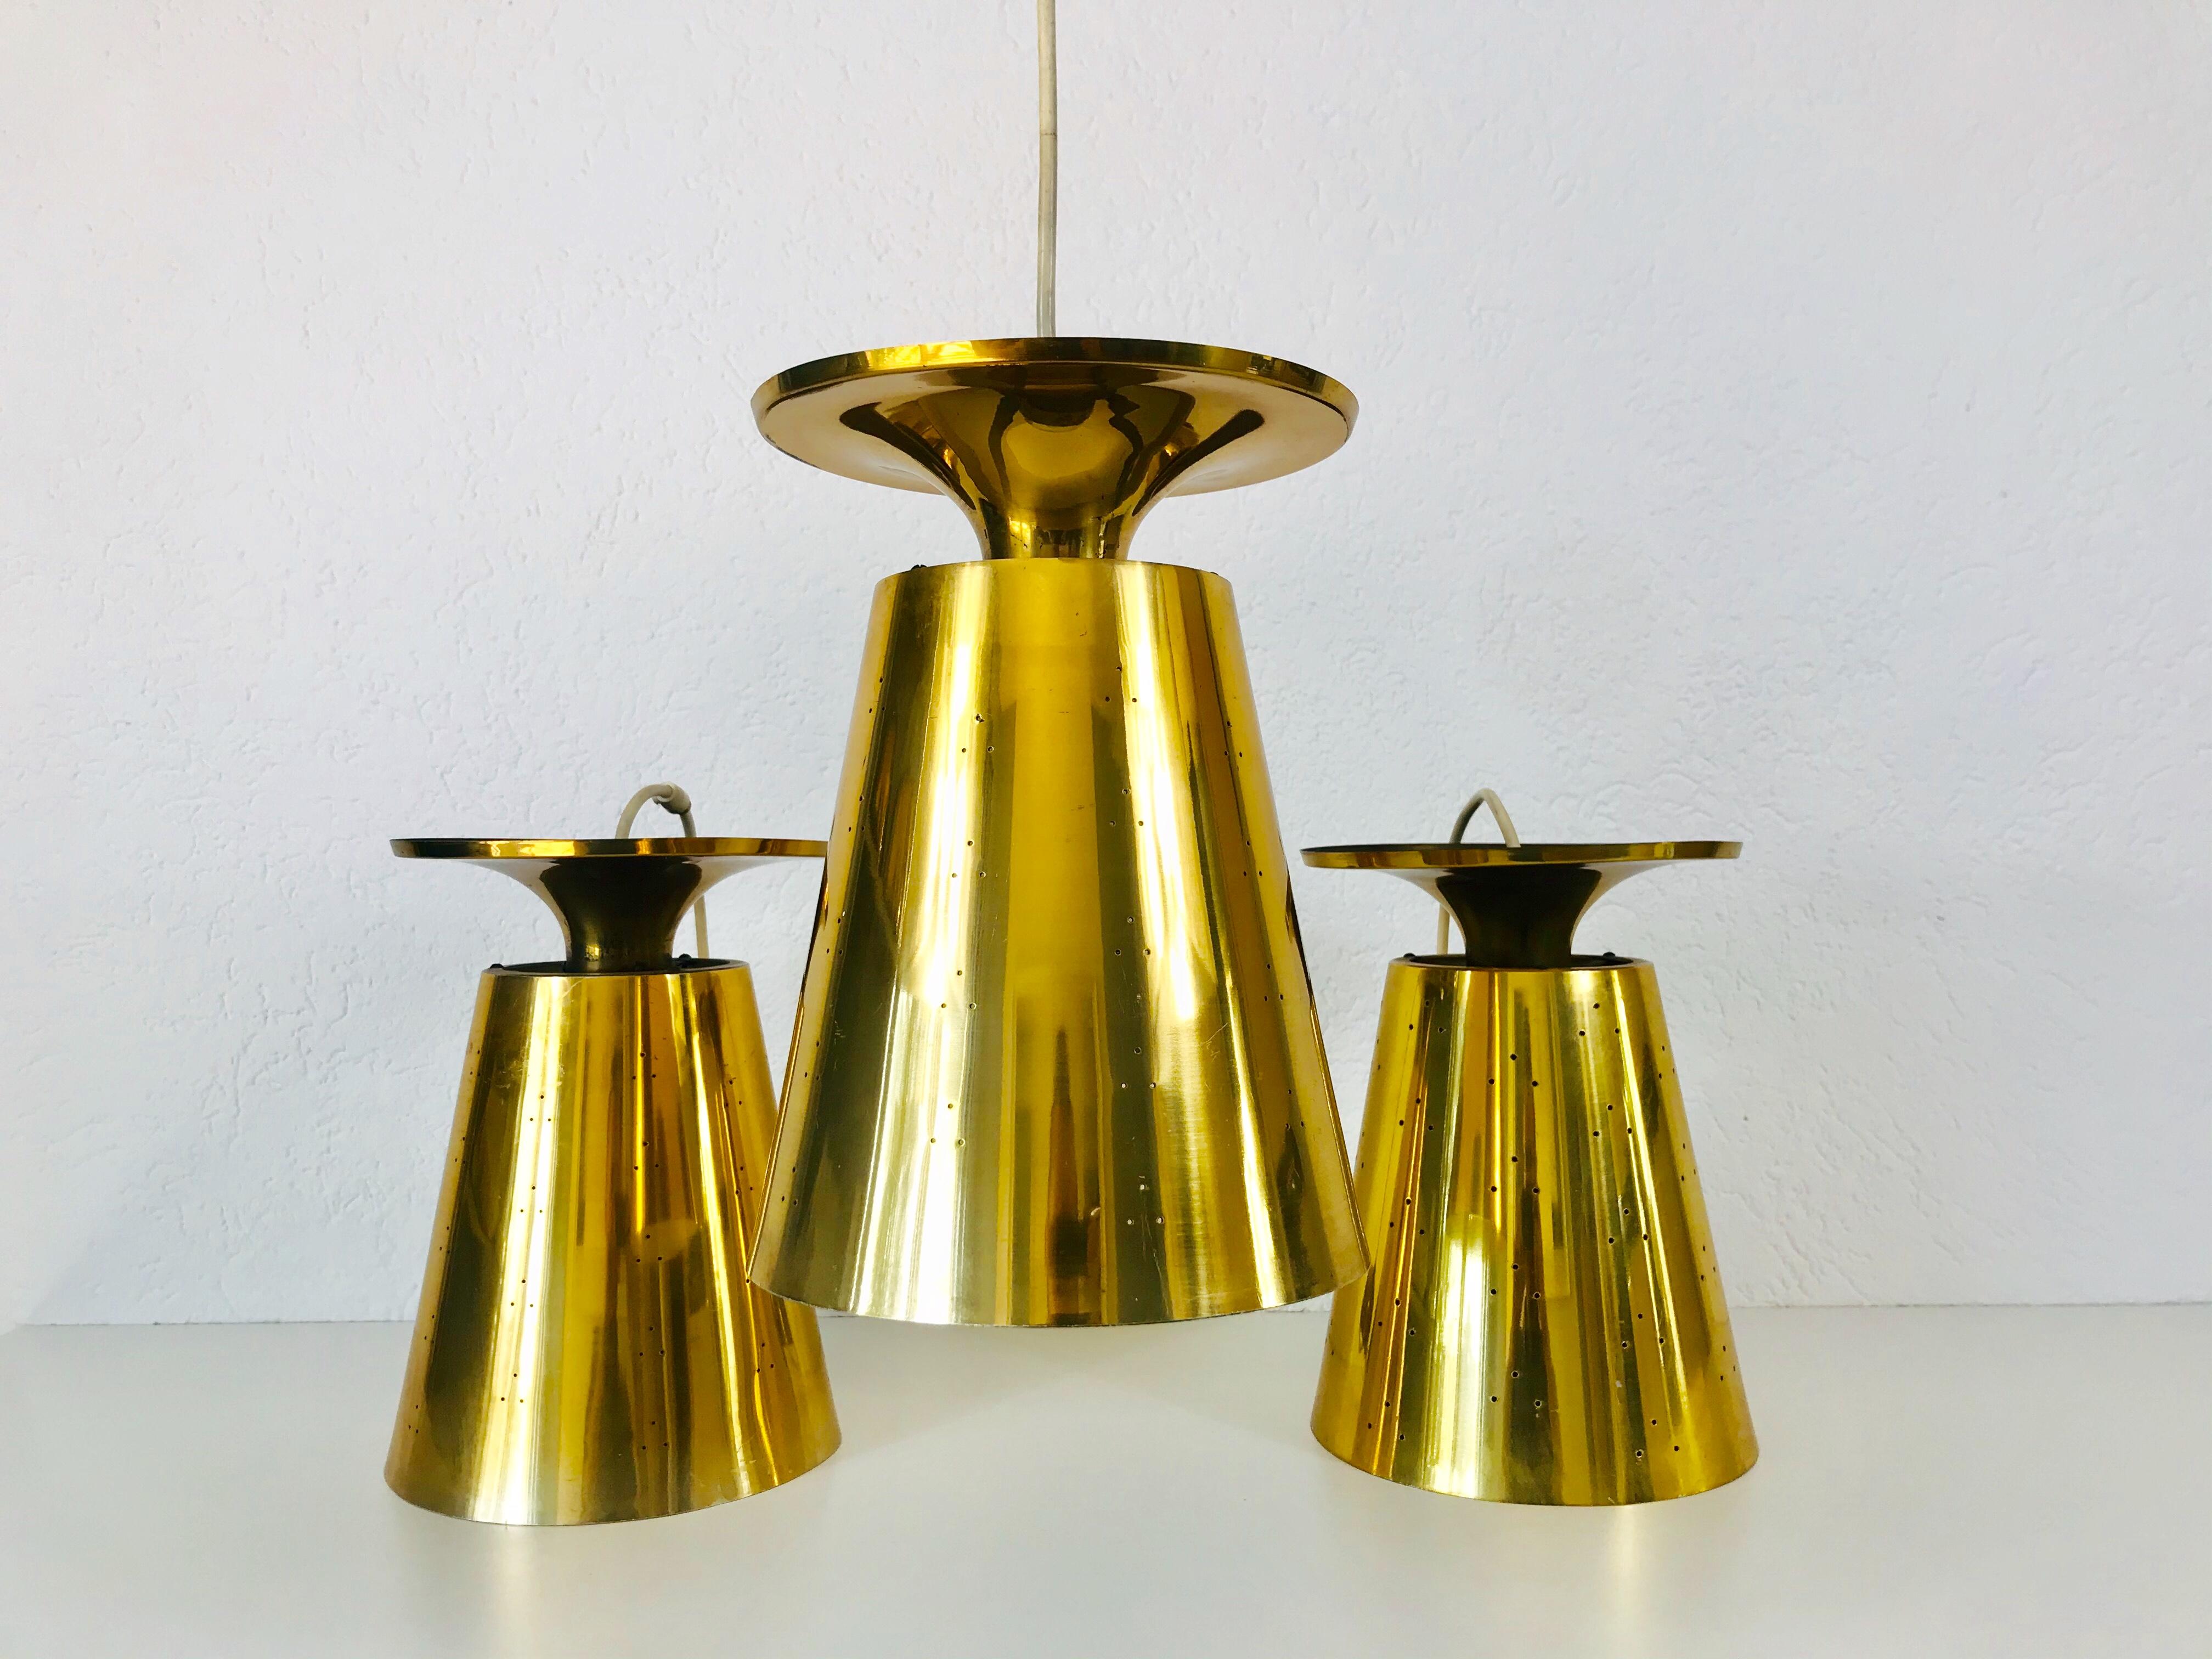 Ensemble de trois lampes suspendues très rares attribuées à Paavo Tynell, fabriquées en Finlande dans les années 1950. L'éclairage est réalisé en laiton massif. Il a de nombreux petits trous qui créent une belle lumière. L'éclairage nécessite une